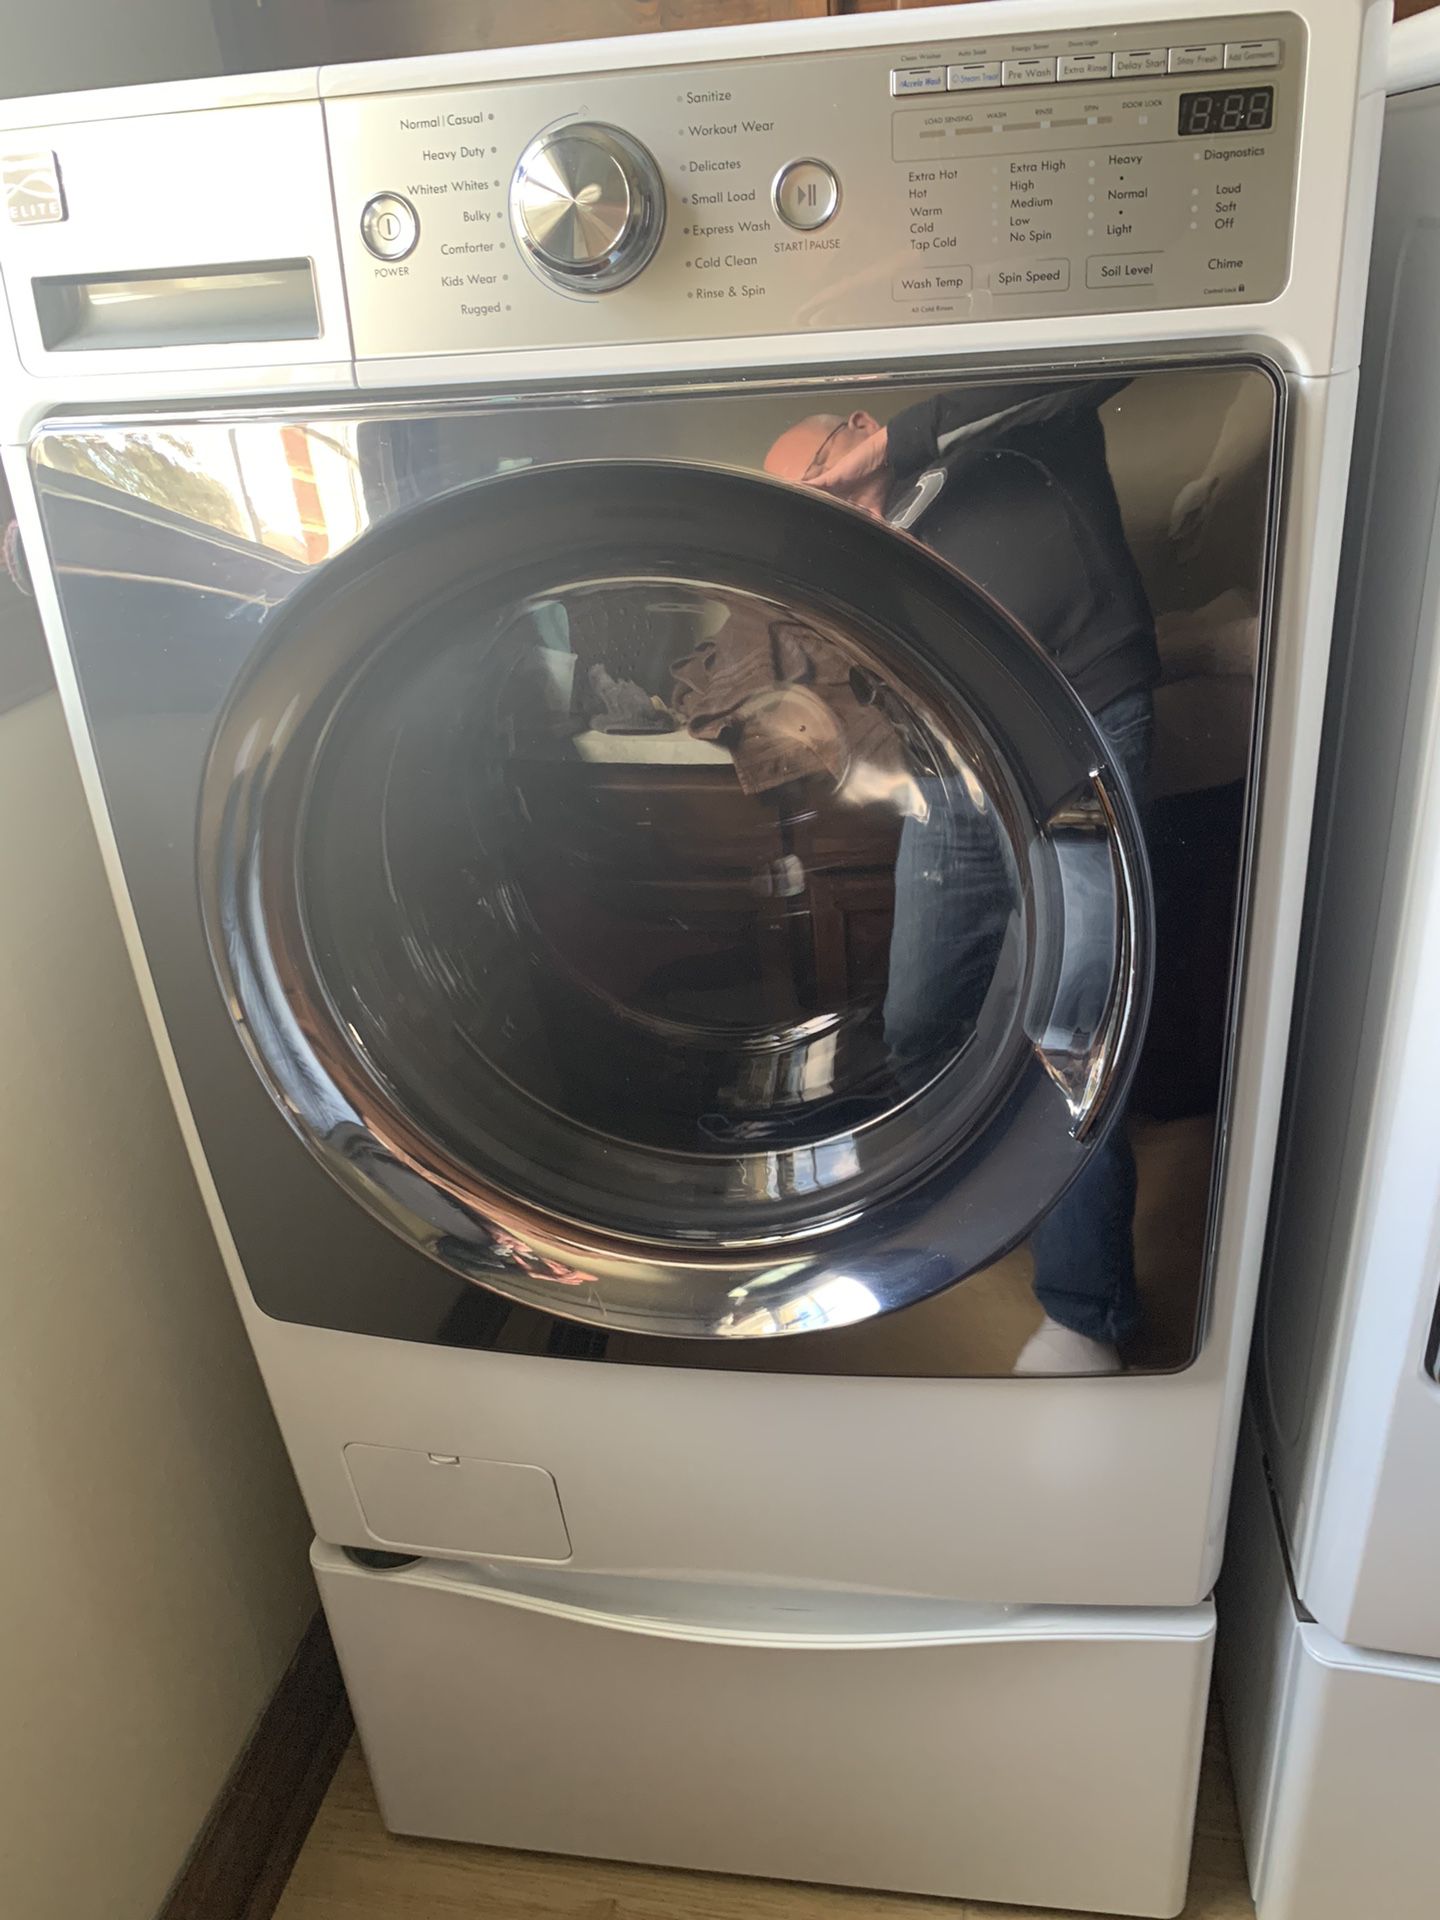 Kenmore Elite Front Loader Washer/Dryer Set